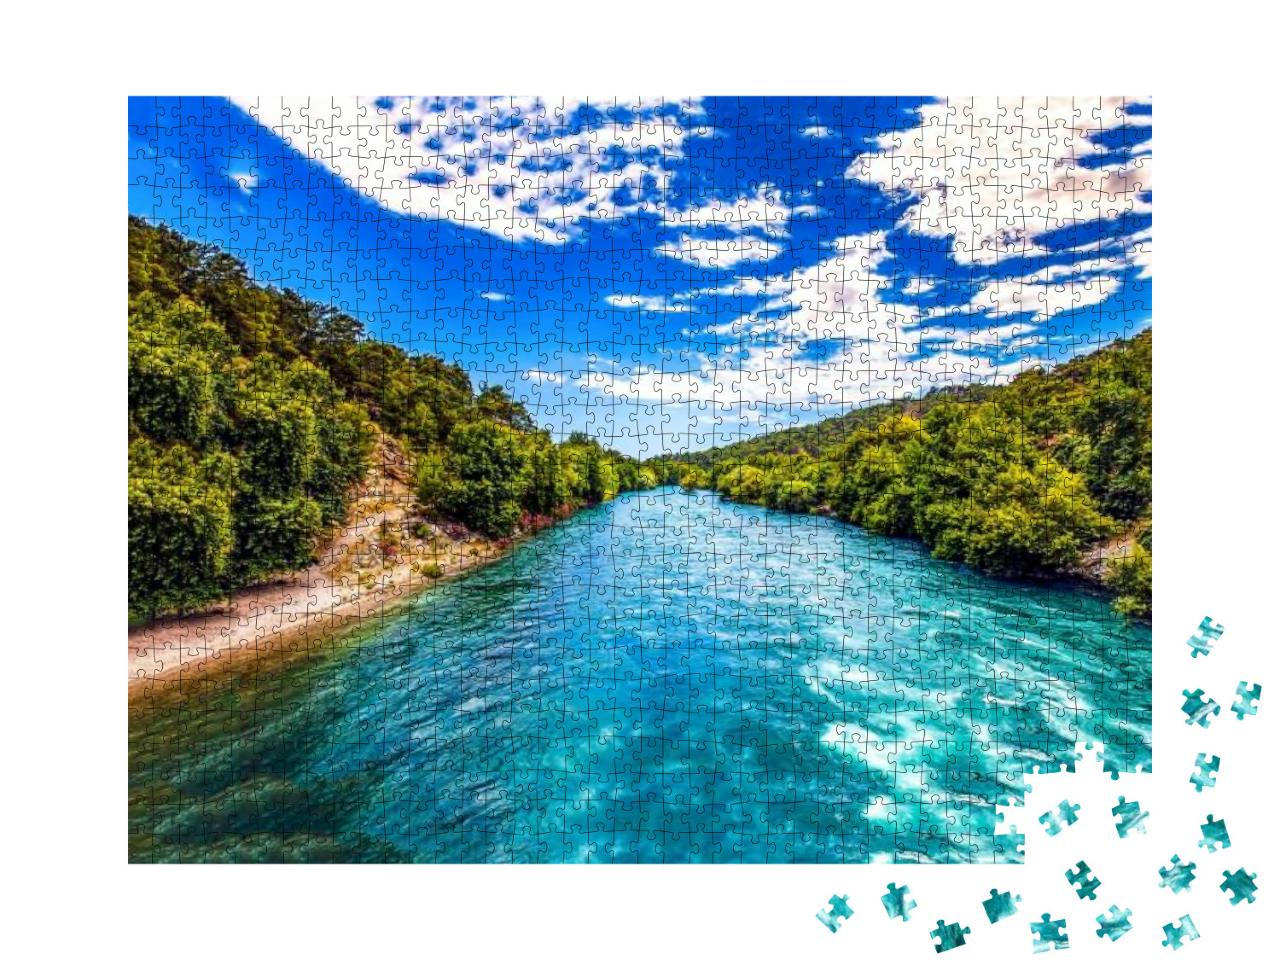 Puzzle 1000 Teile „Wunderschöne Flusslandschaft“